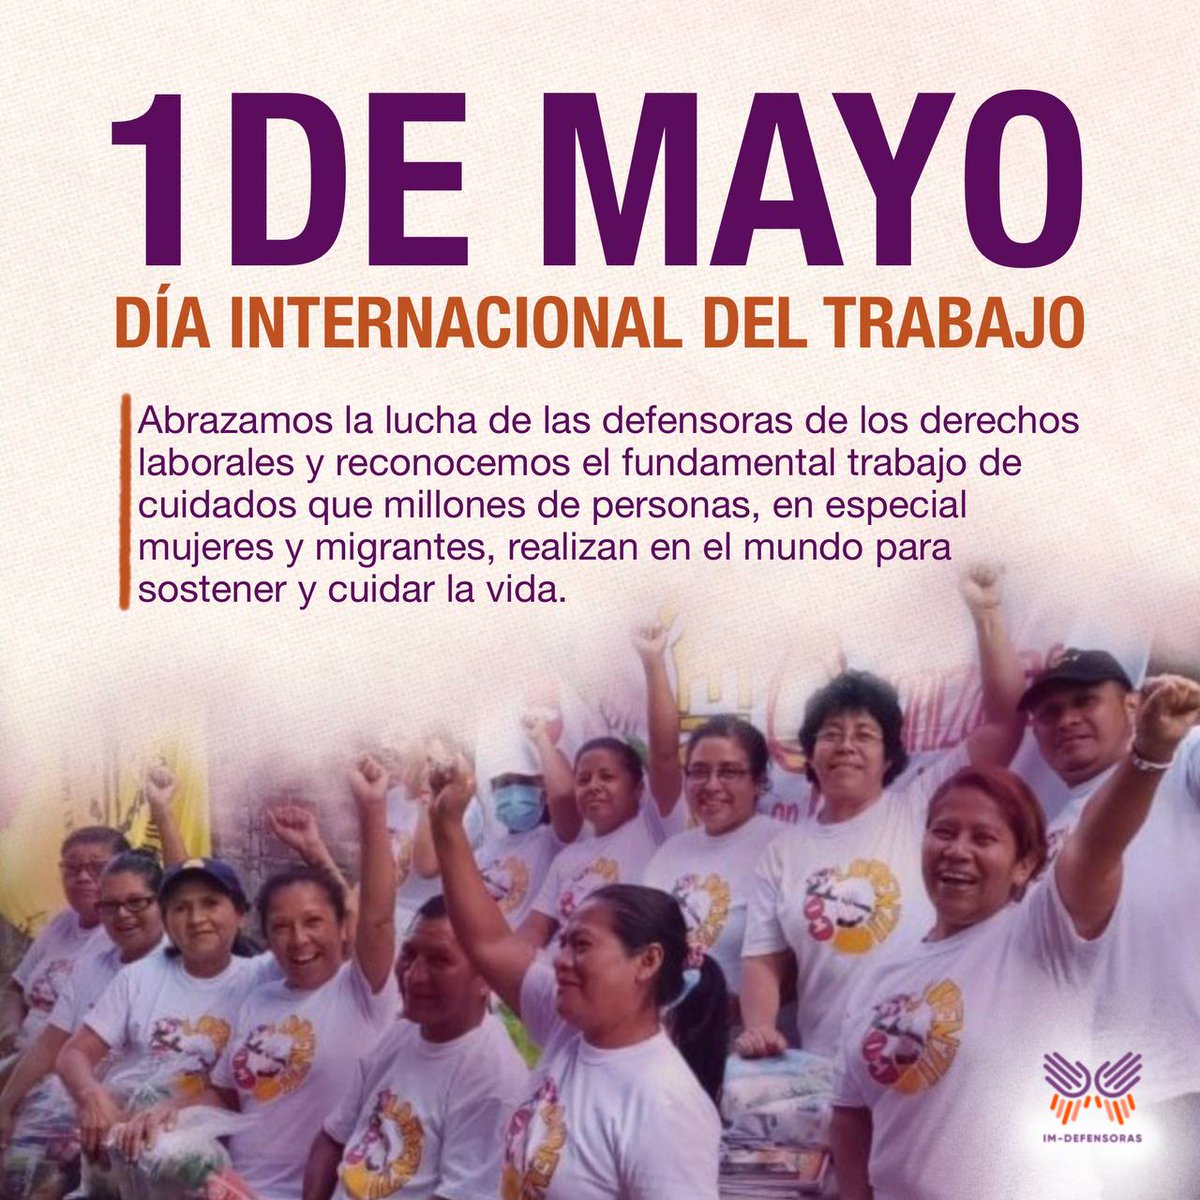 📢Este #1DeMayo nos sumamos a la demanda en contra de la explotación laboral, por la igualdad, el respeto a los derechos de las personas trabajadoras y el fin de la violencia contra las defensoras que luchan por los derechos laborales. ¡Basta de precarizar nuestras vidas! ✊🏽